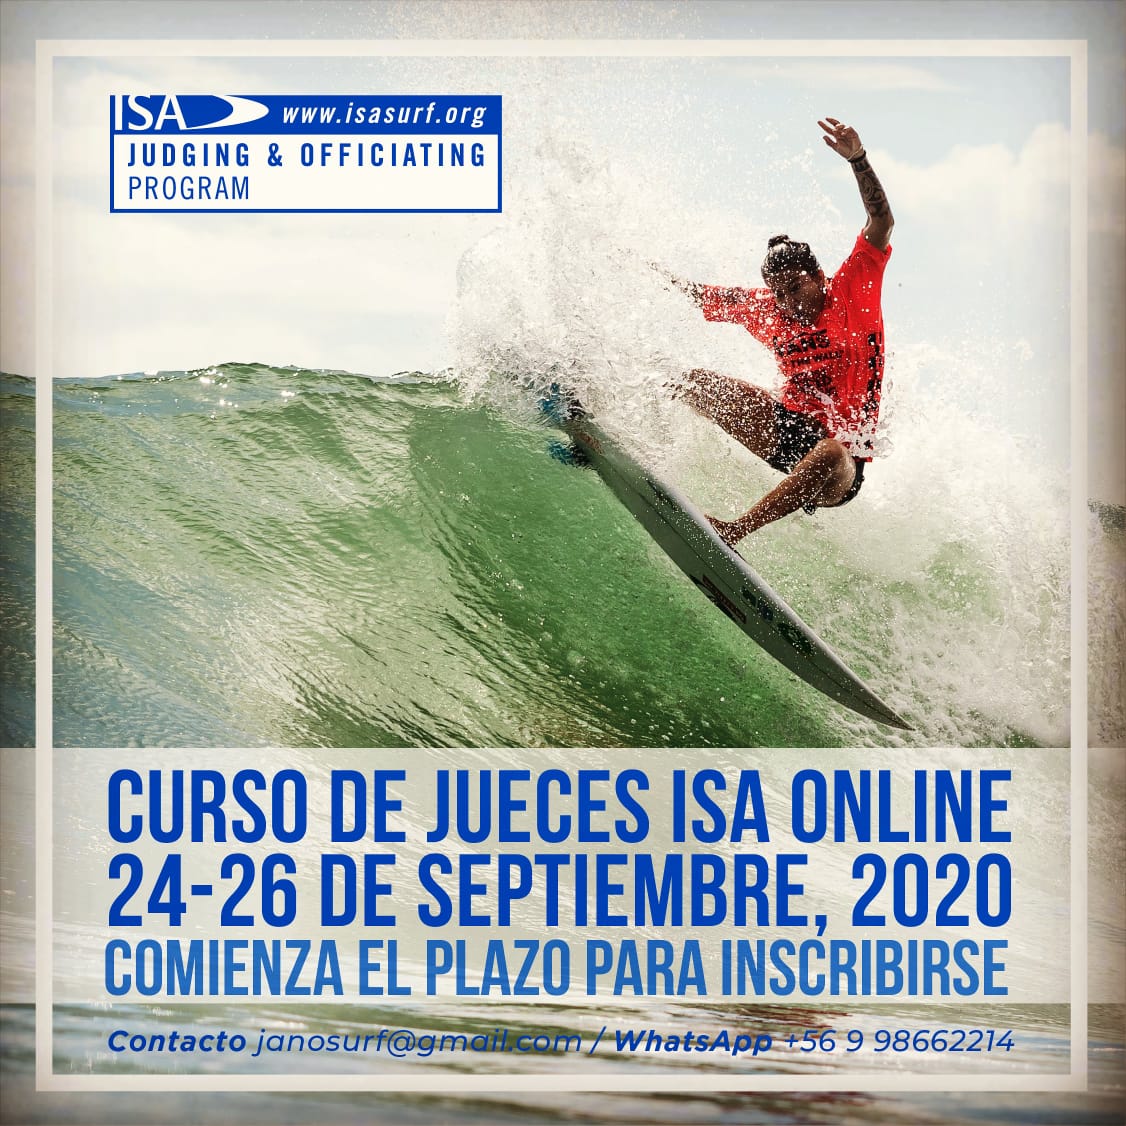 Surf: Curso nacional de jueces USU 2020